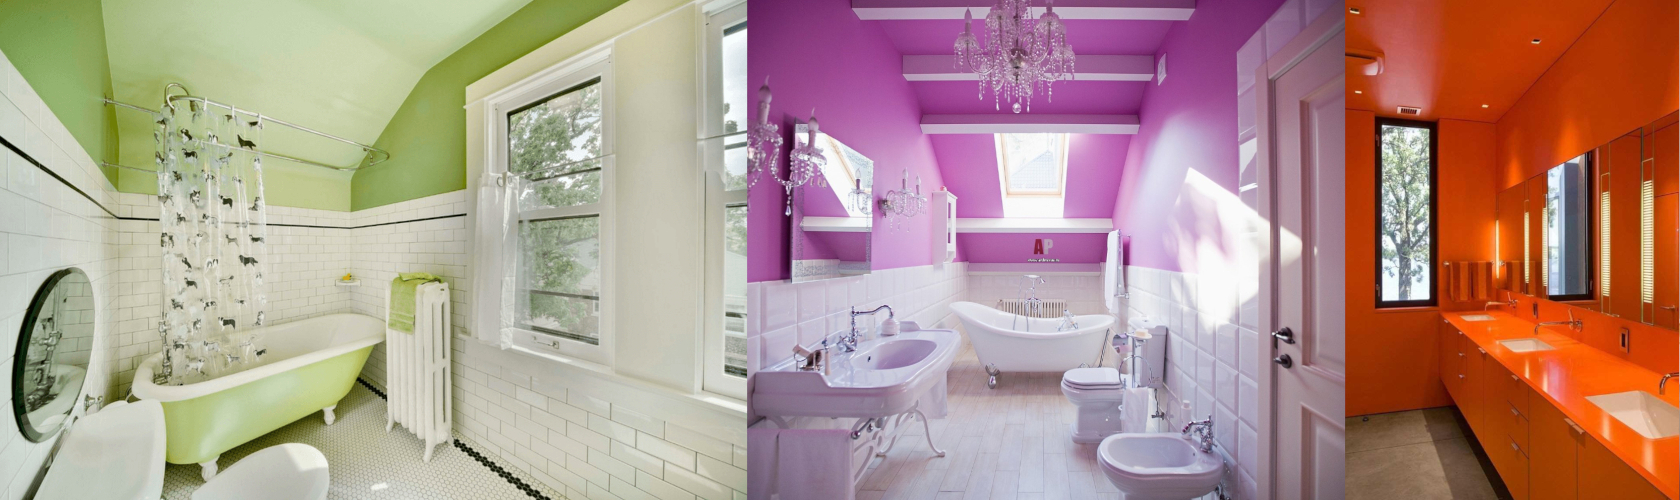 Как правильно выбрать краску для потолка в ванной комнате: советы и рекомендации